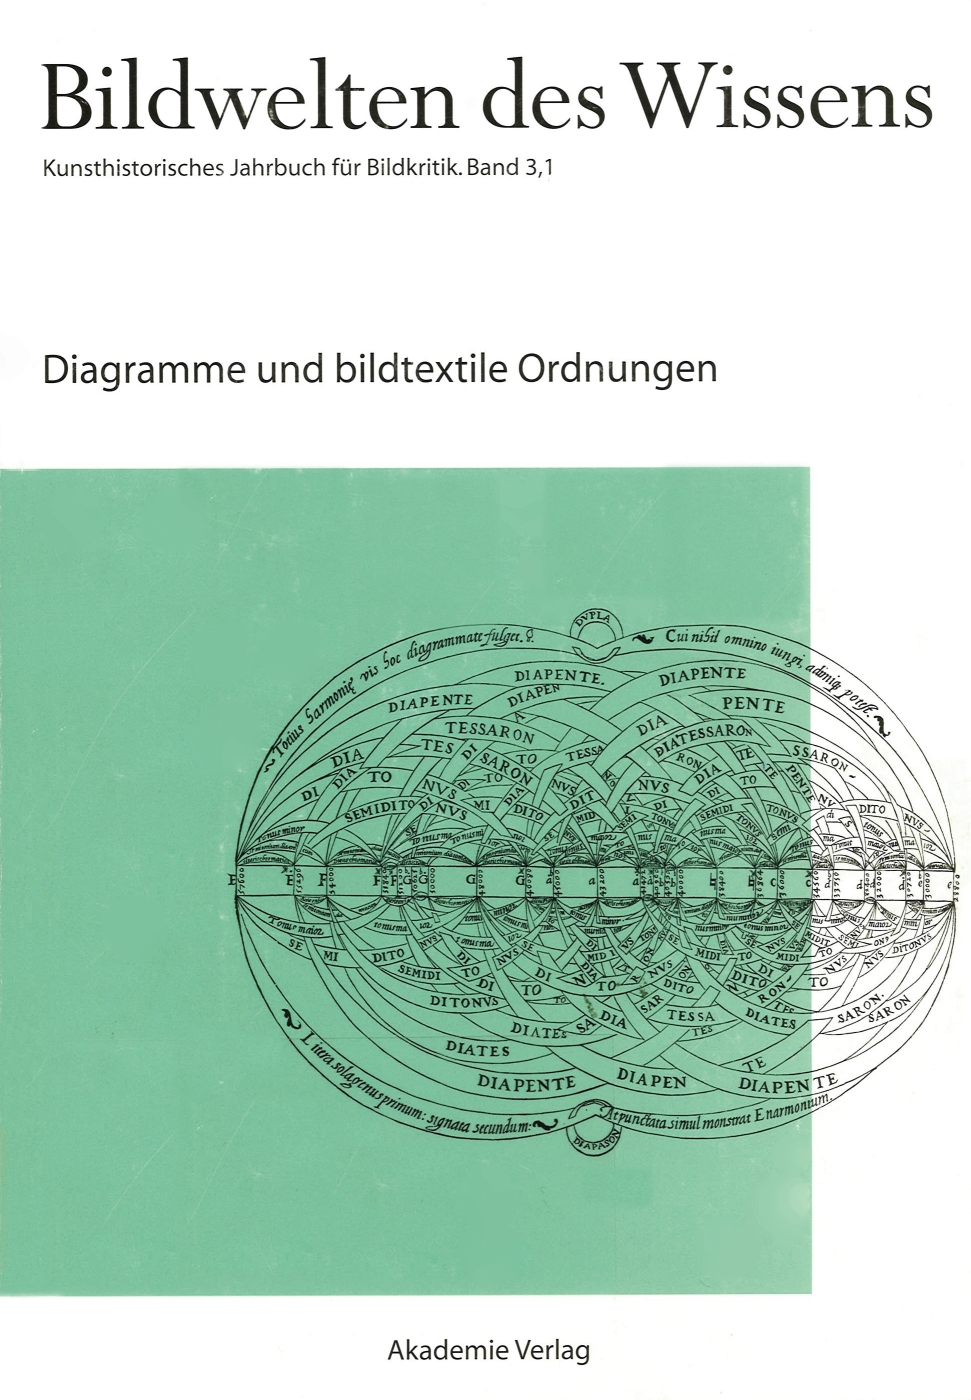 BW 3-1 Diagramme und bildtextile Ordnungen_b.jpg